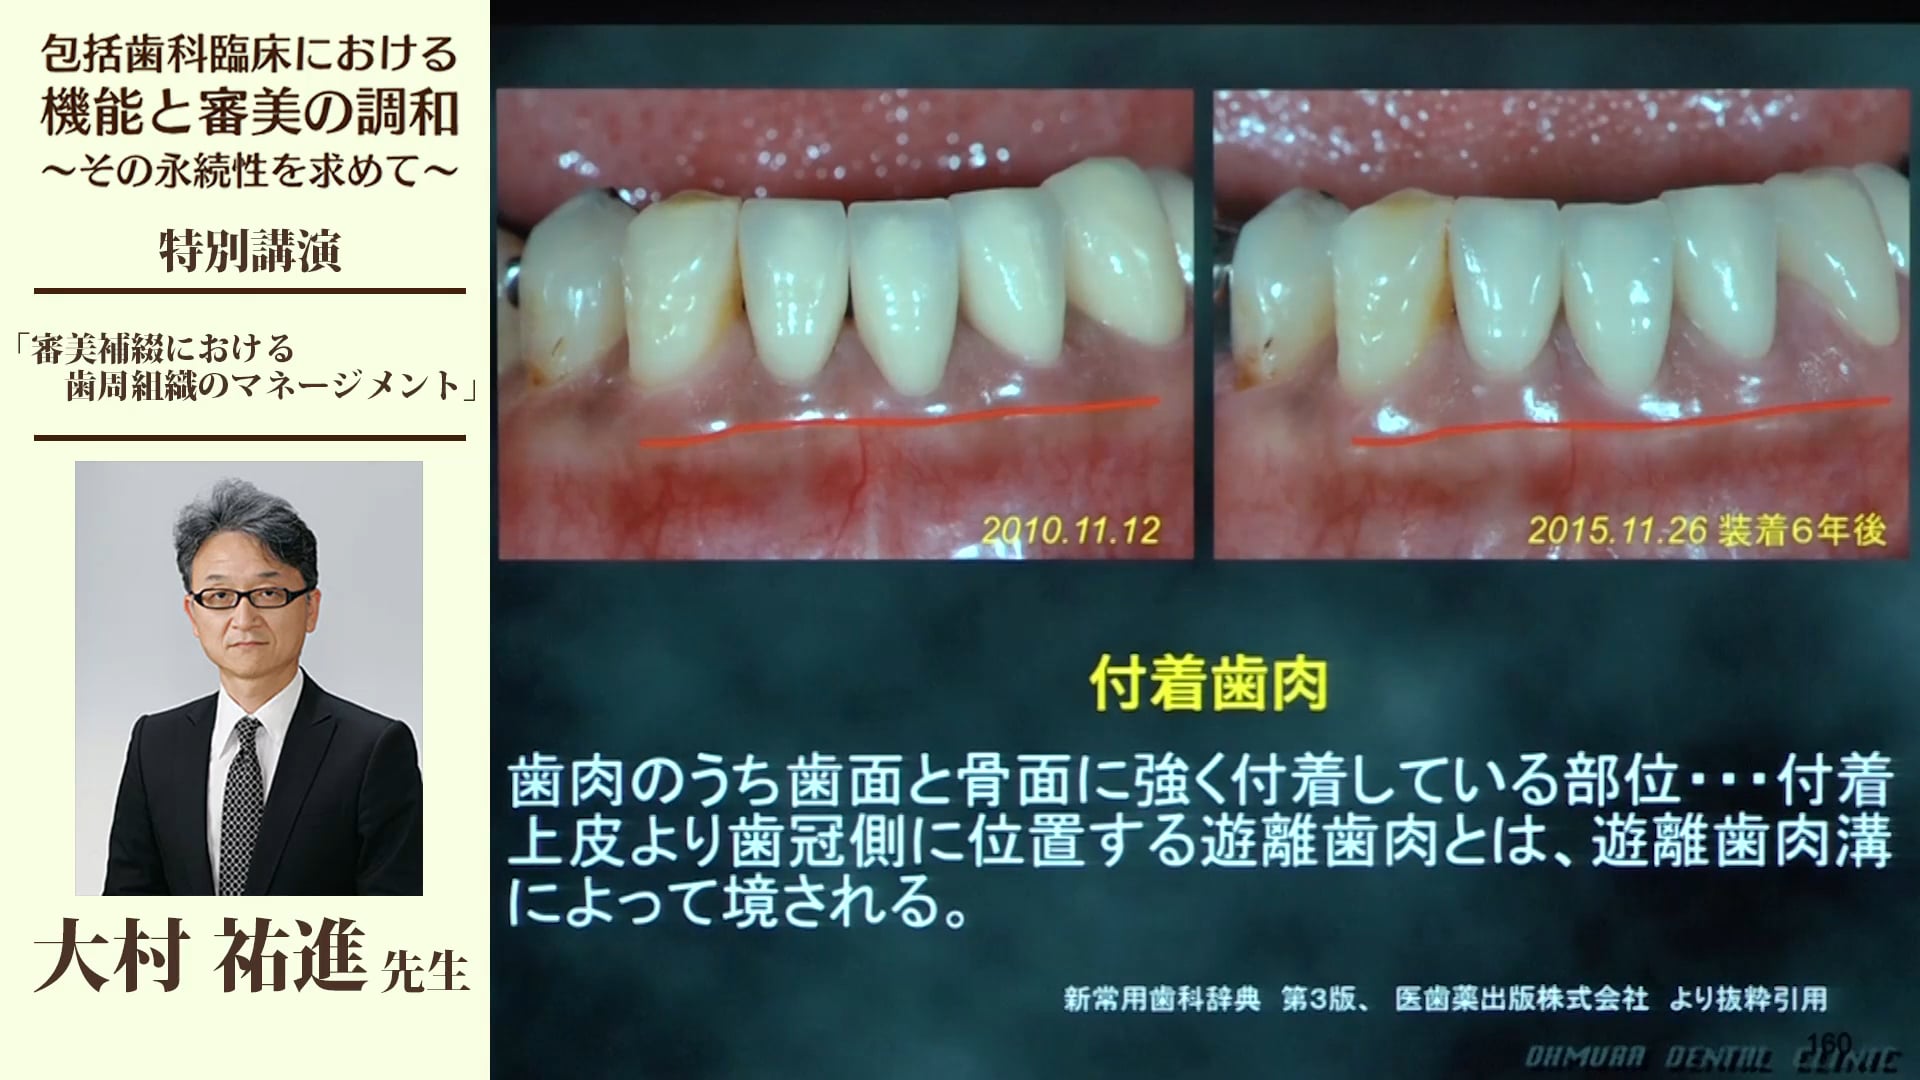 臨床 歯周補綴2 マニュアル&クリニック 第一歯科出版 www.physioclinic.it